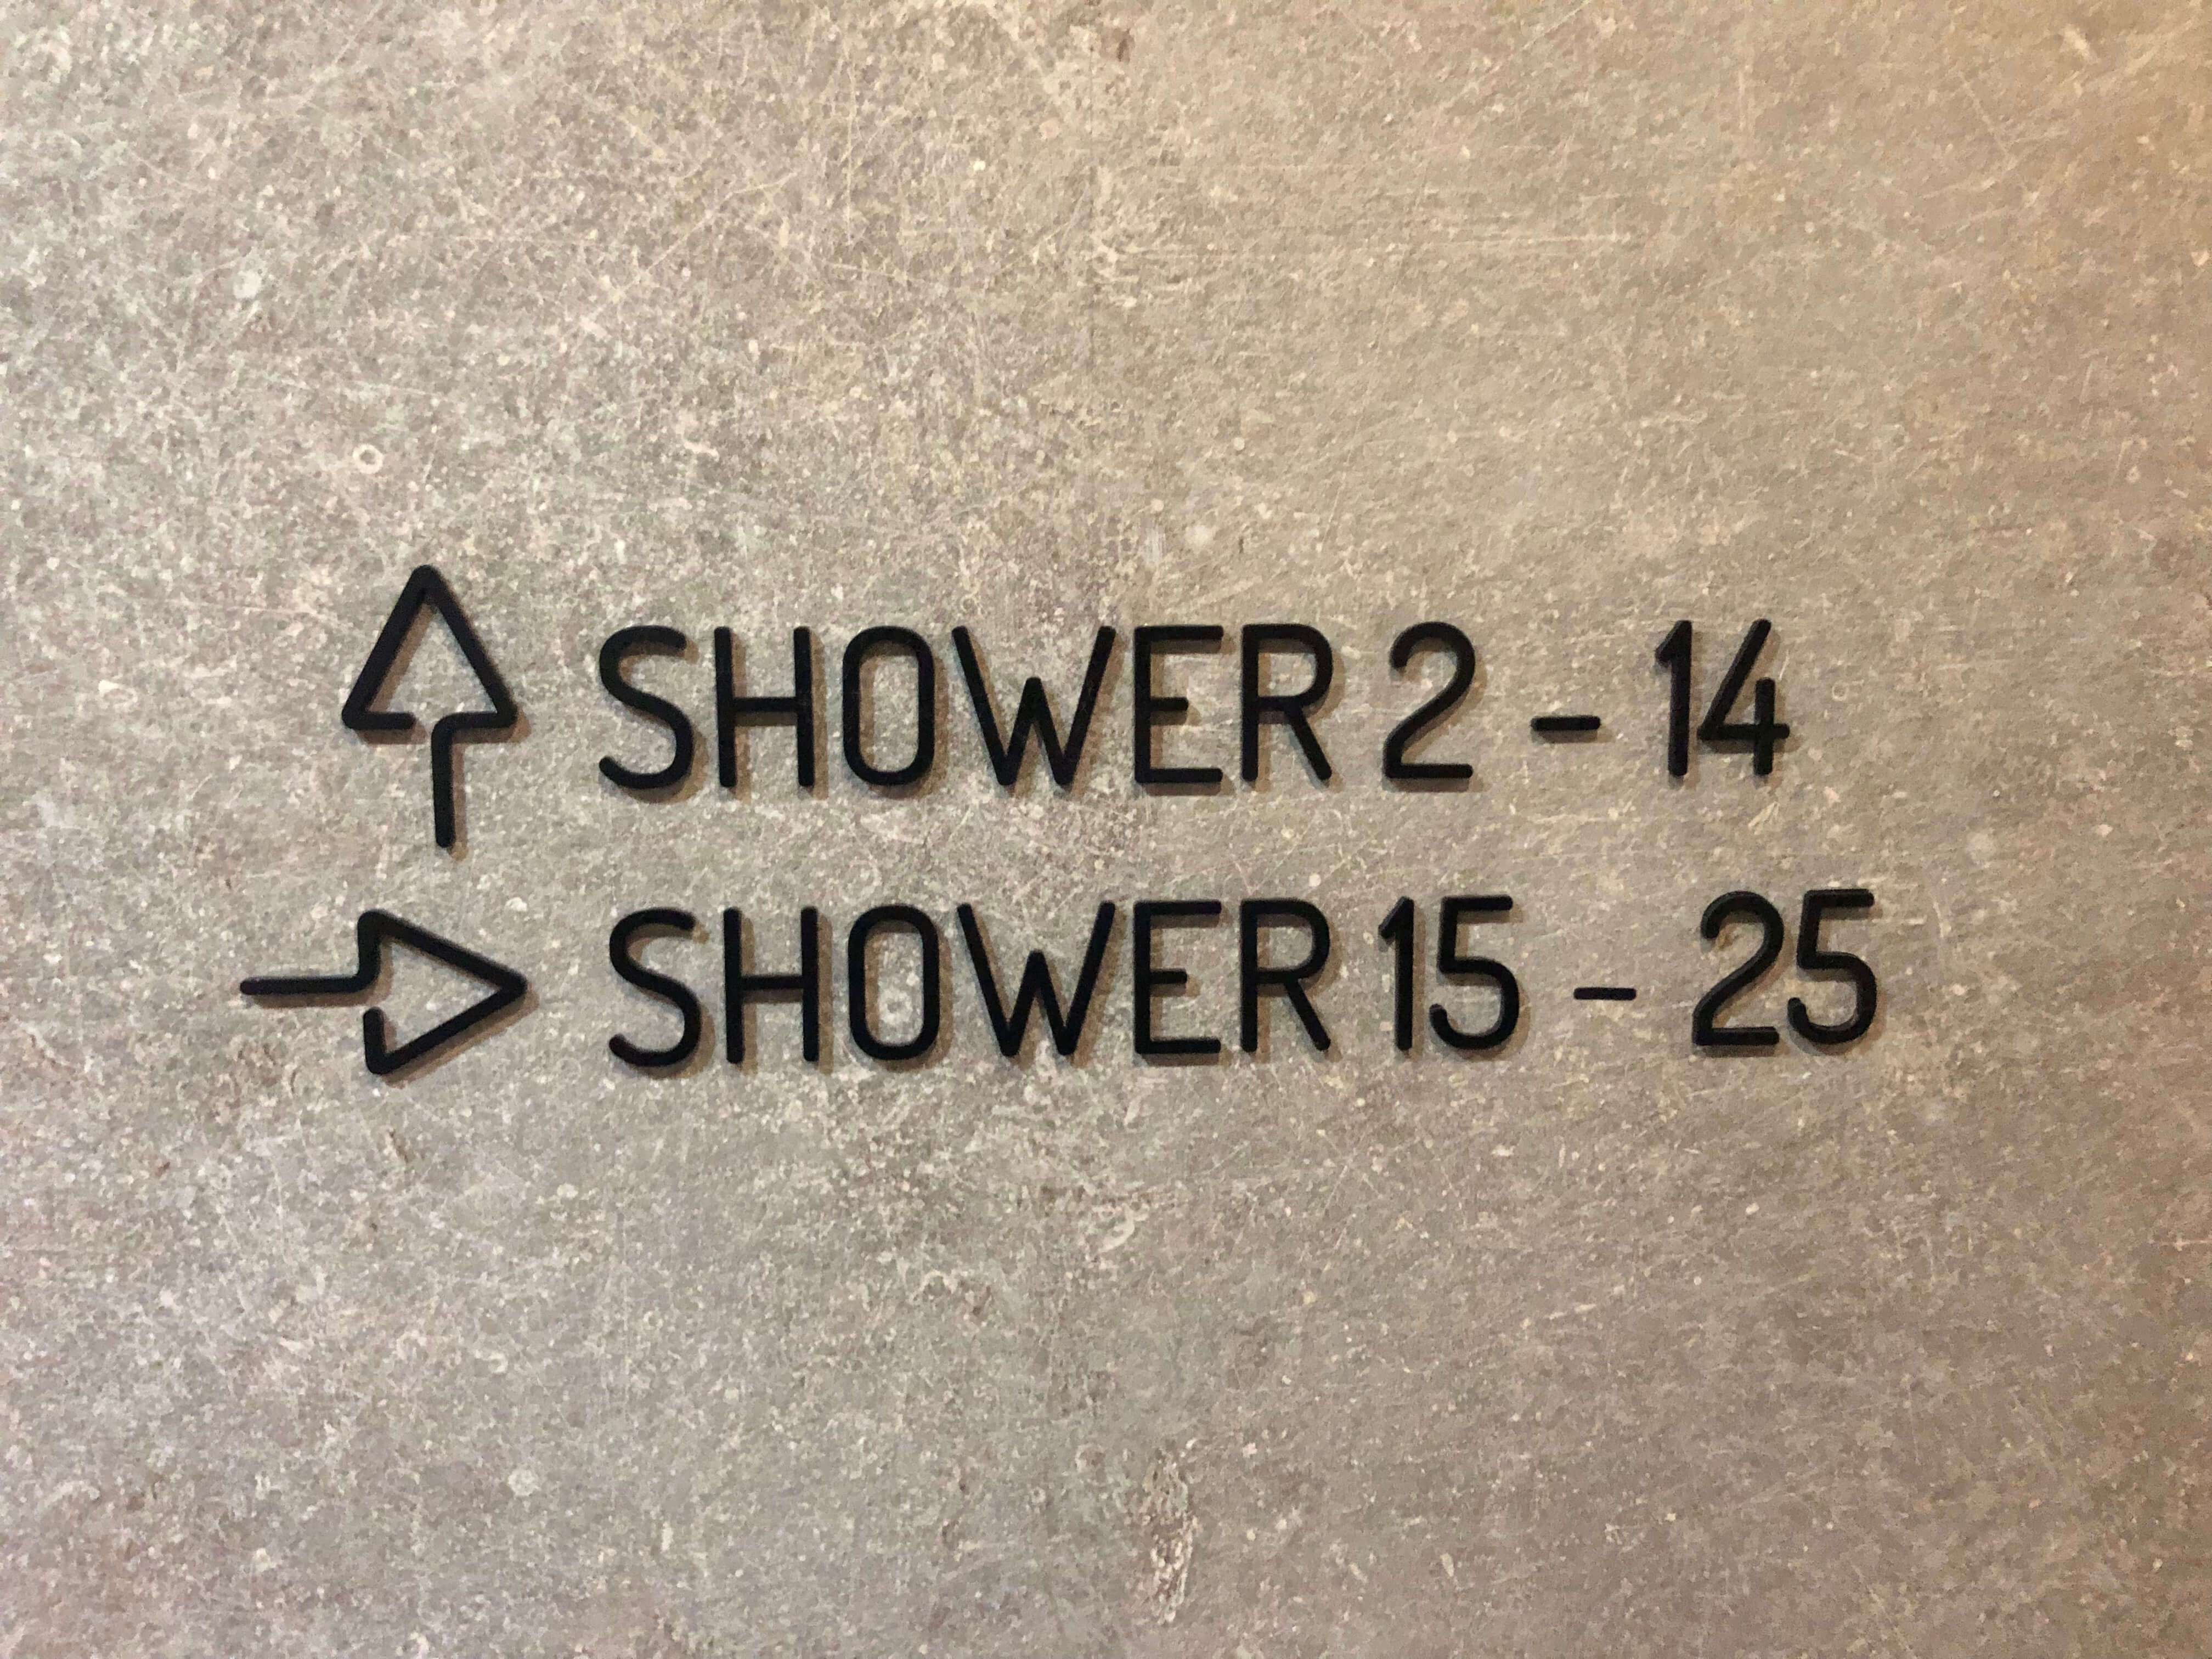 Shower signage